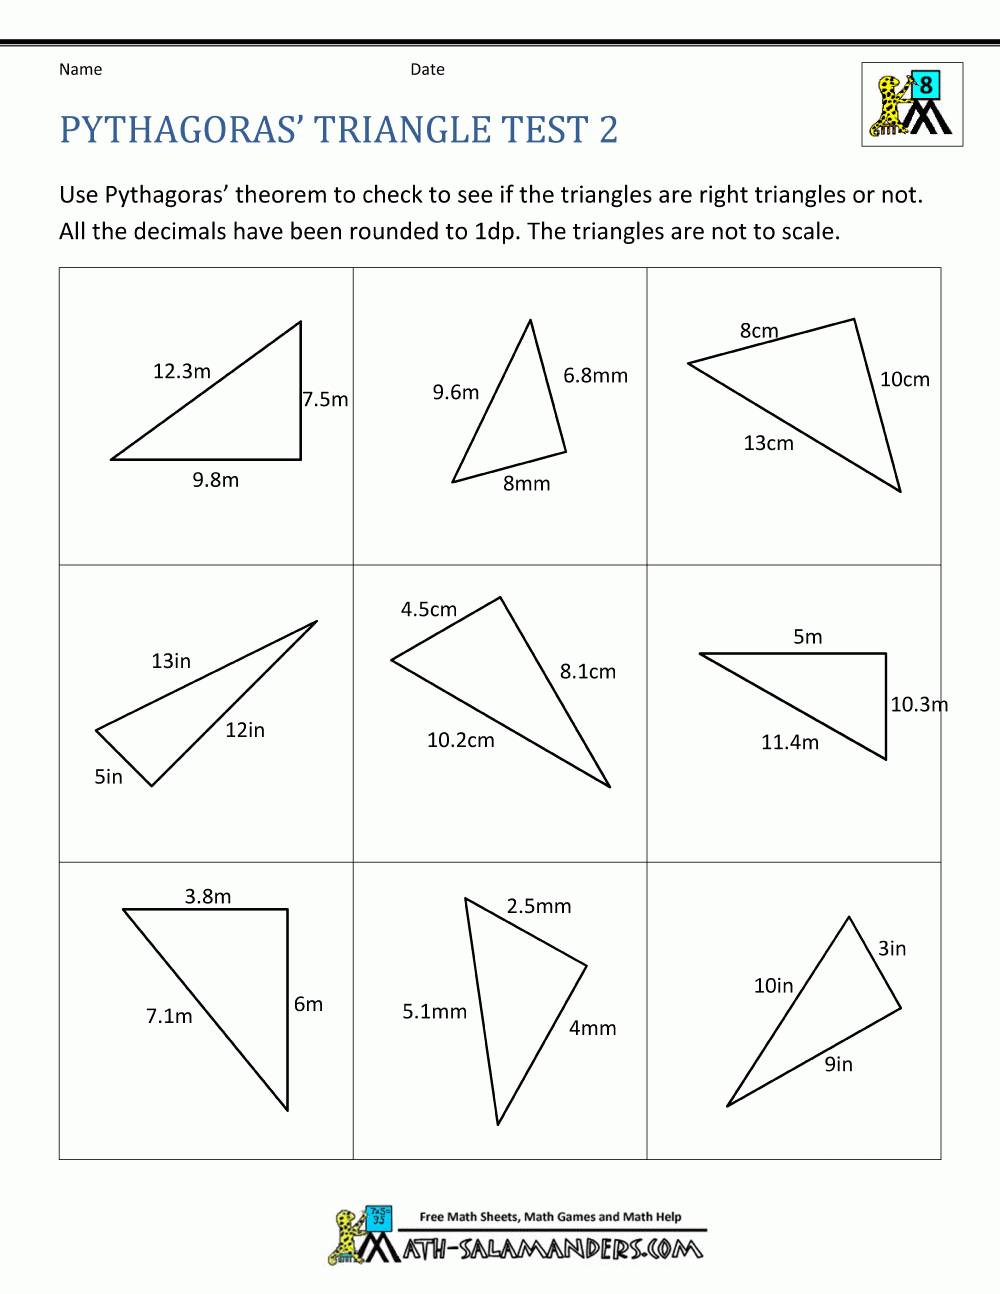 Pythagoras Theorem Questions Free Printable Pythagorean Theorem Worksheets Free Printable